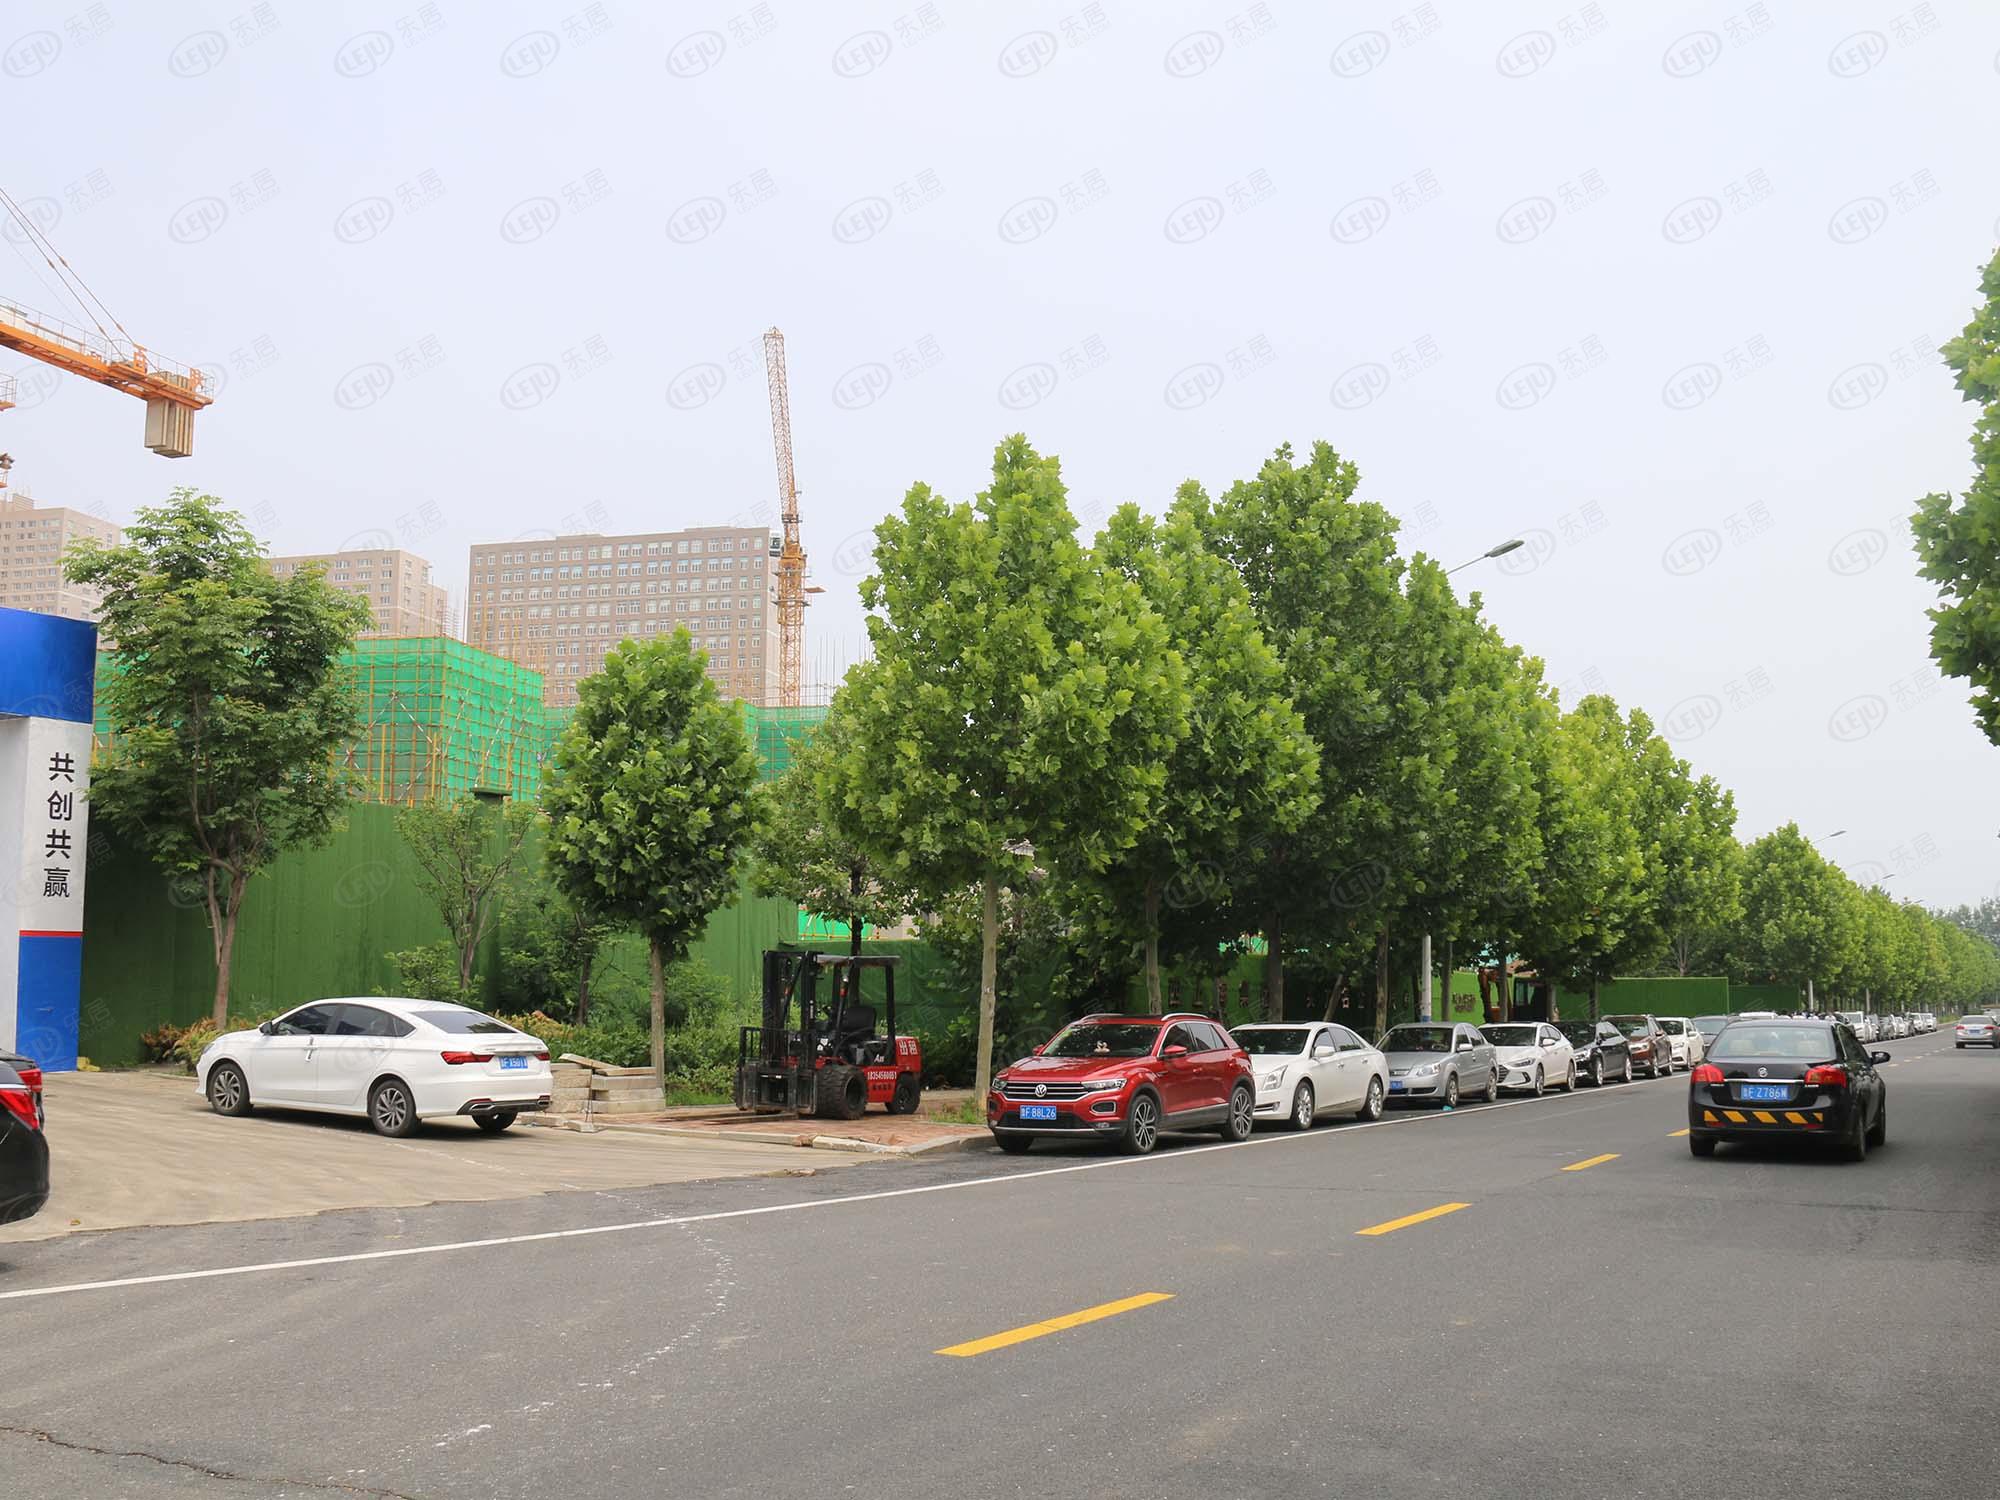 福山西上海崑玉嶺第，地处开发区长江路288号隶属于西部副中心，价格为14500/平米左右。